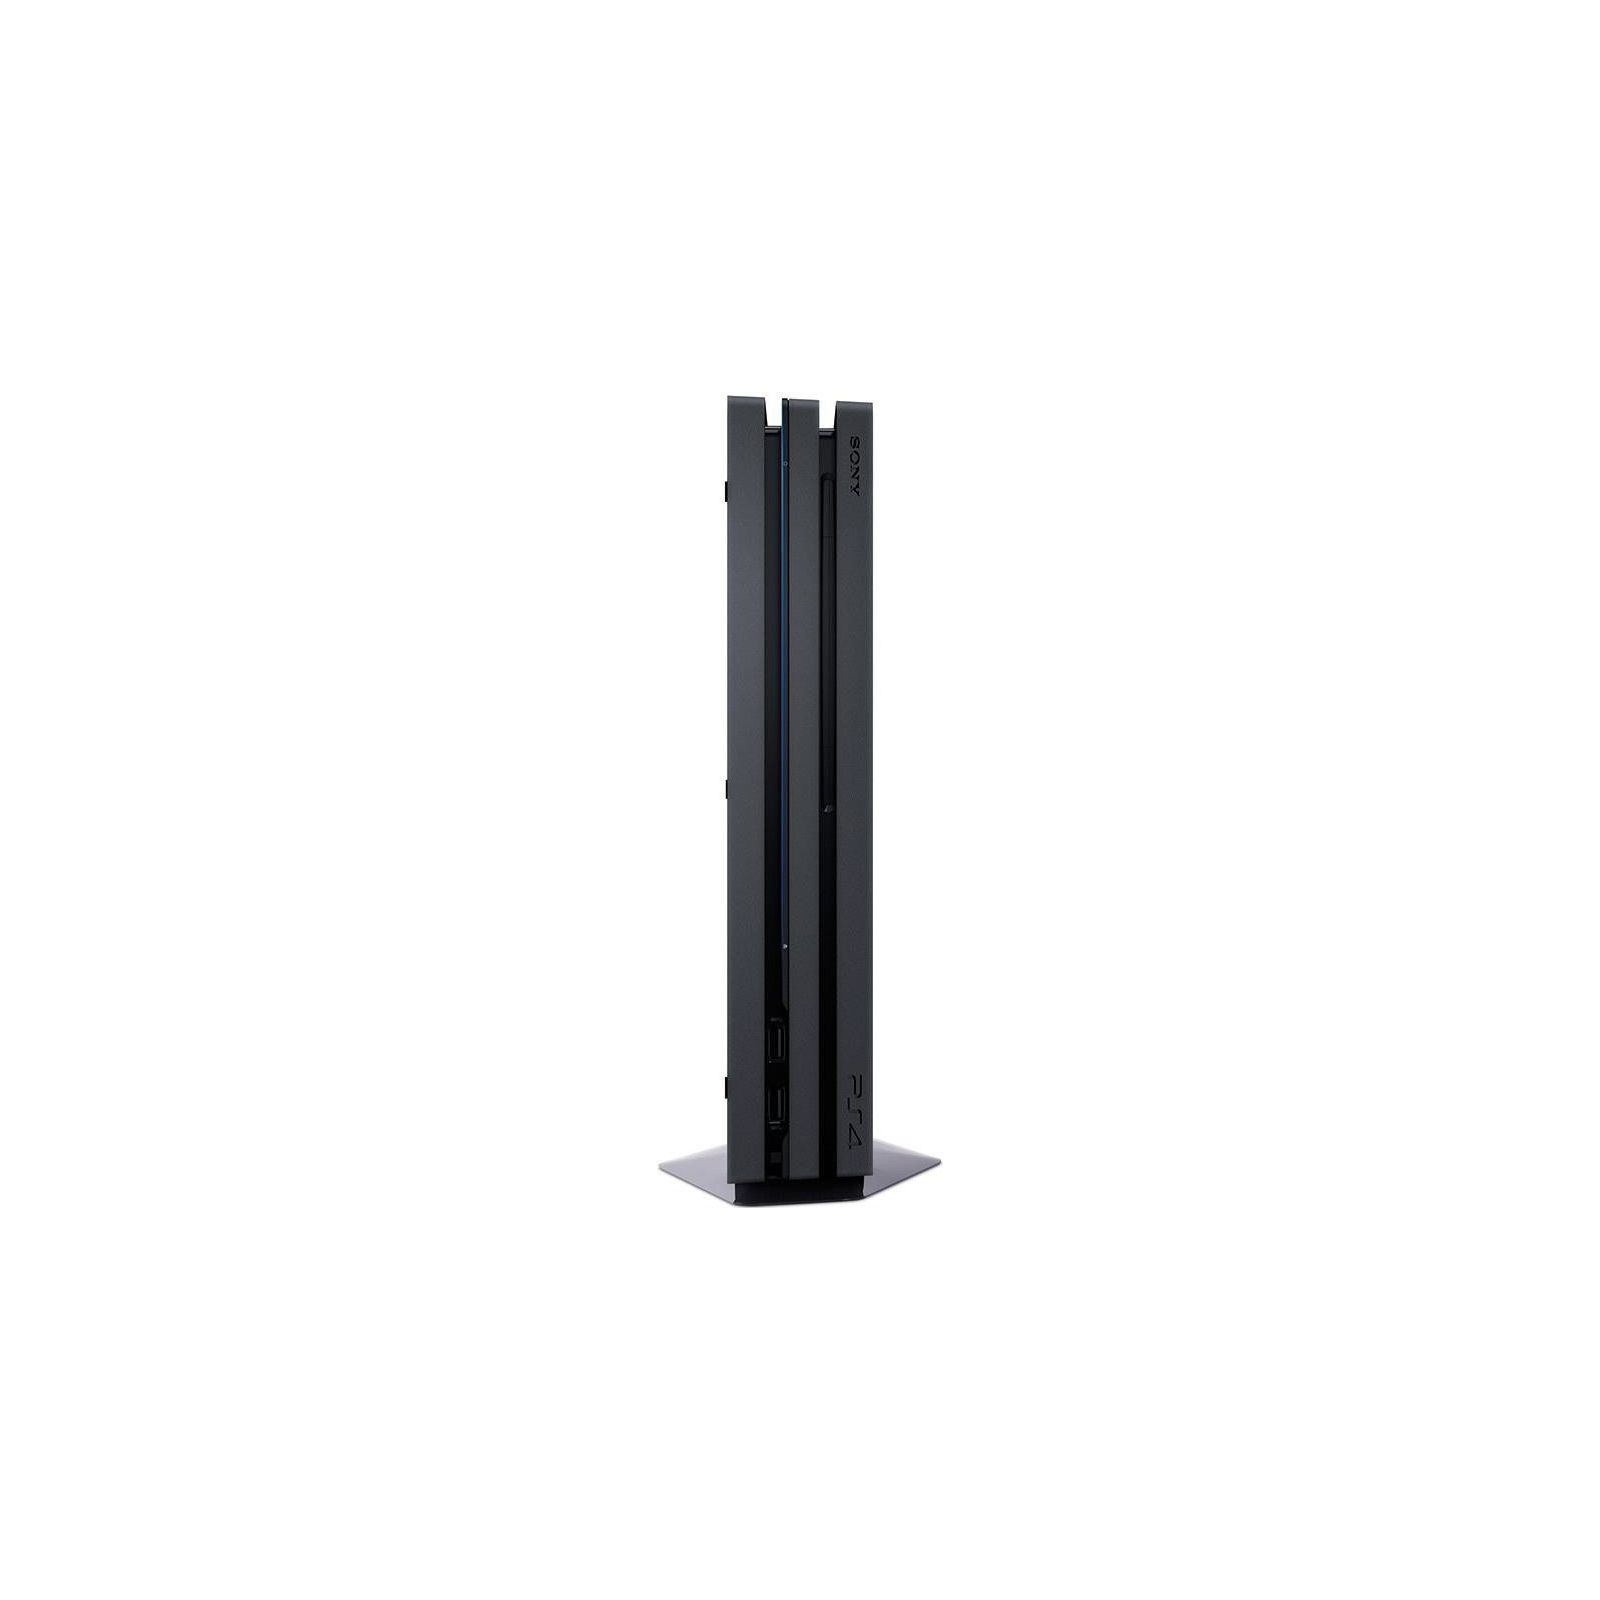 Игровая консоль Sony PlayStation 4 Pro 1TB black (CUH-7108B) изображение 6